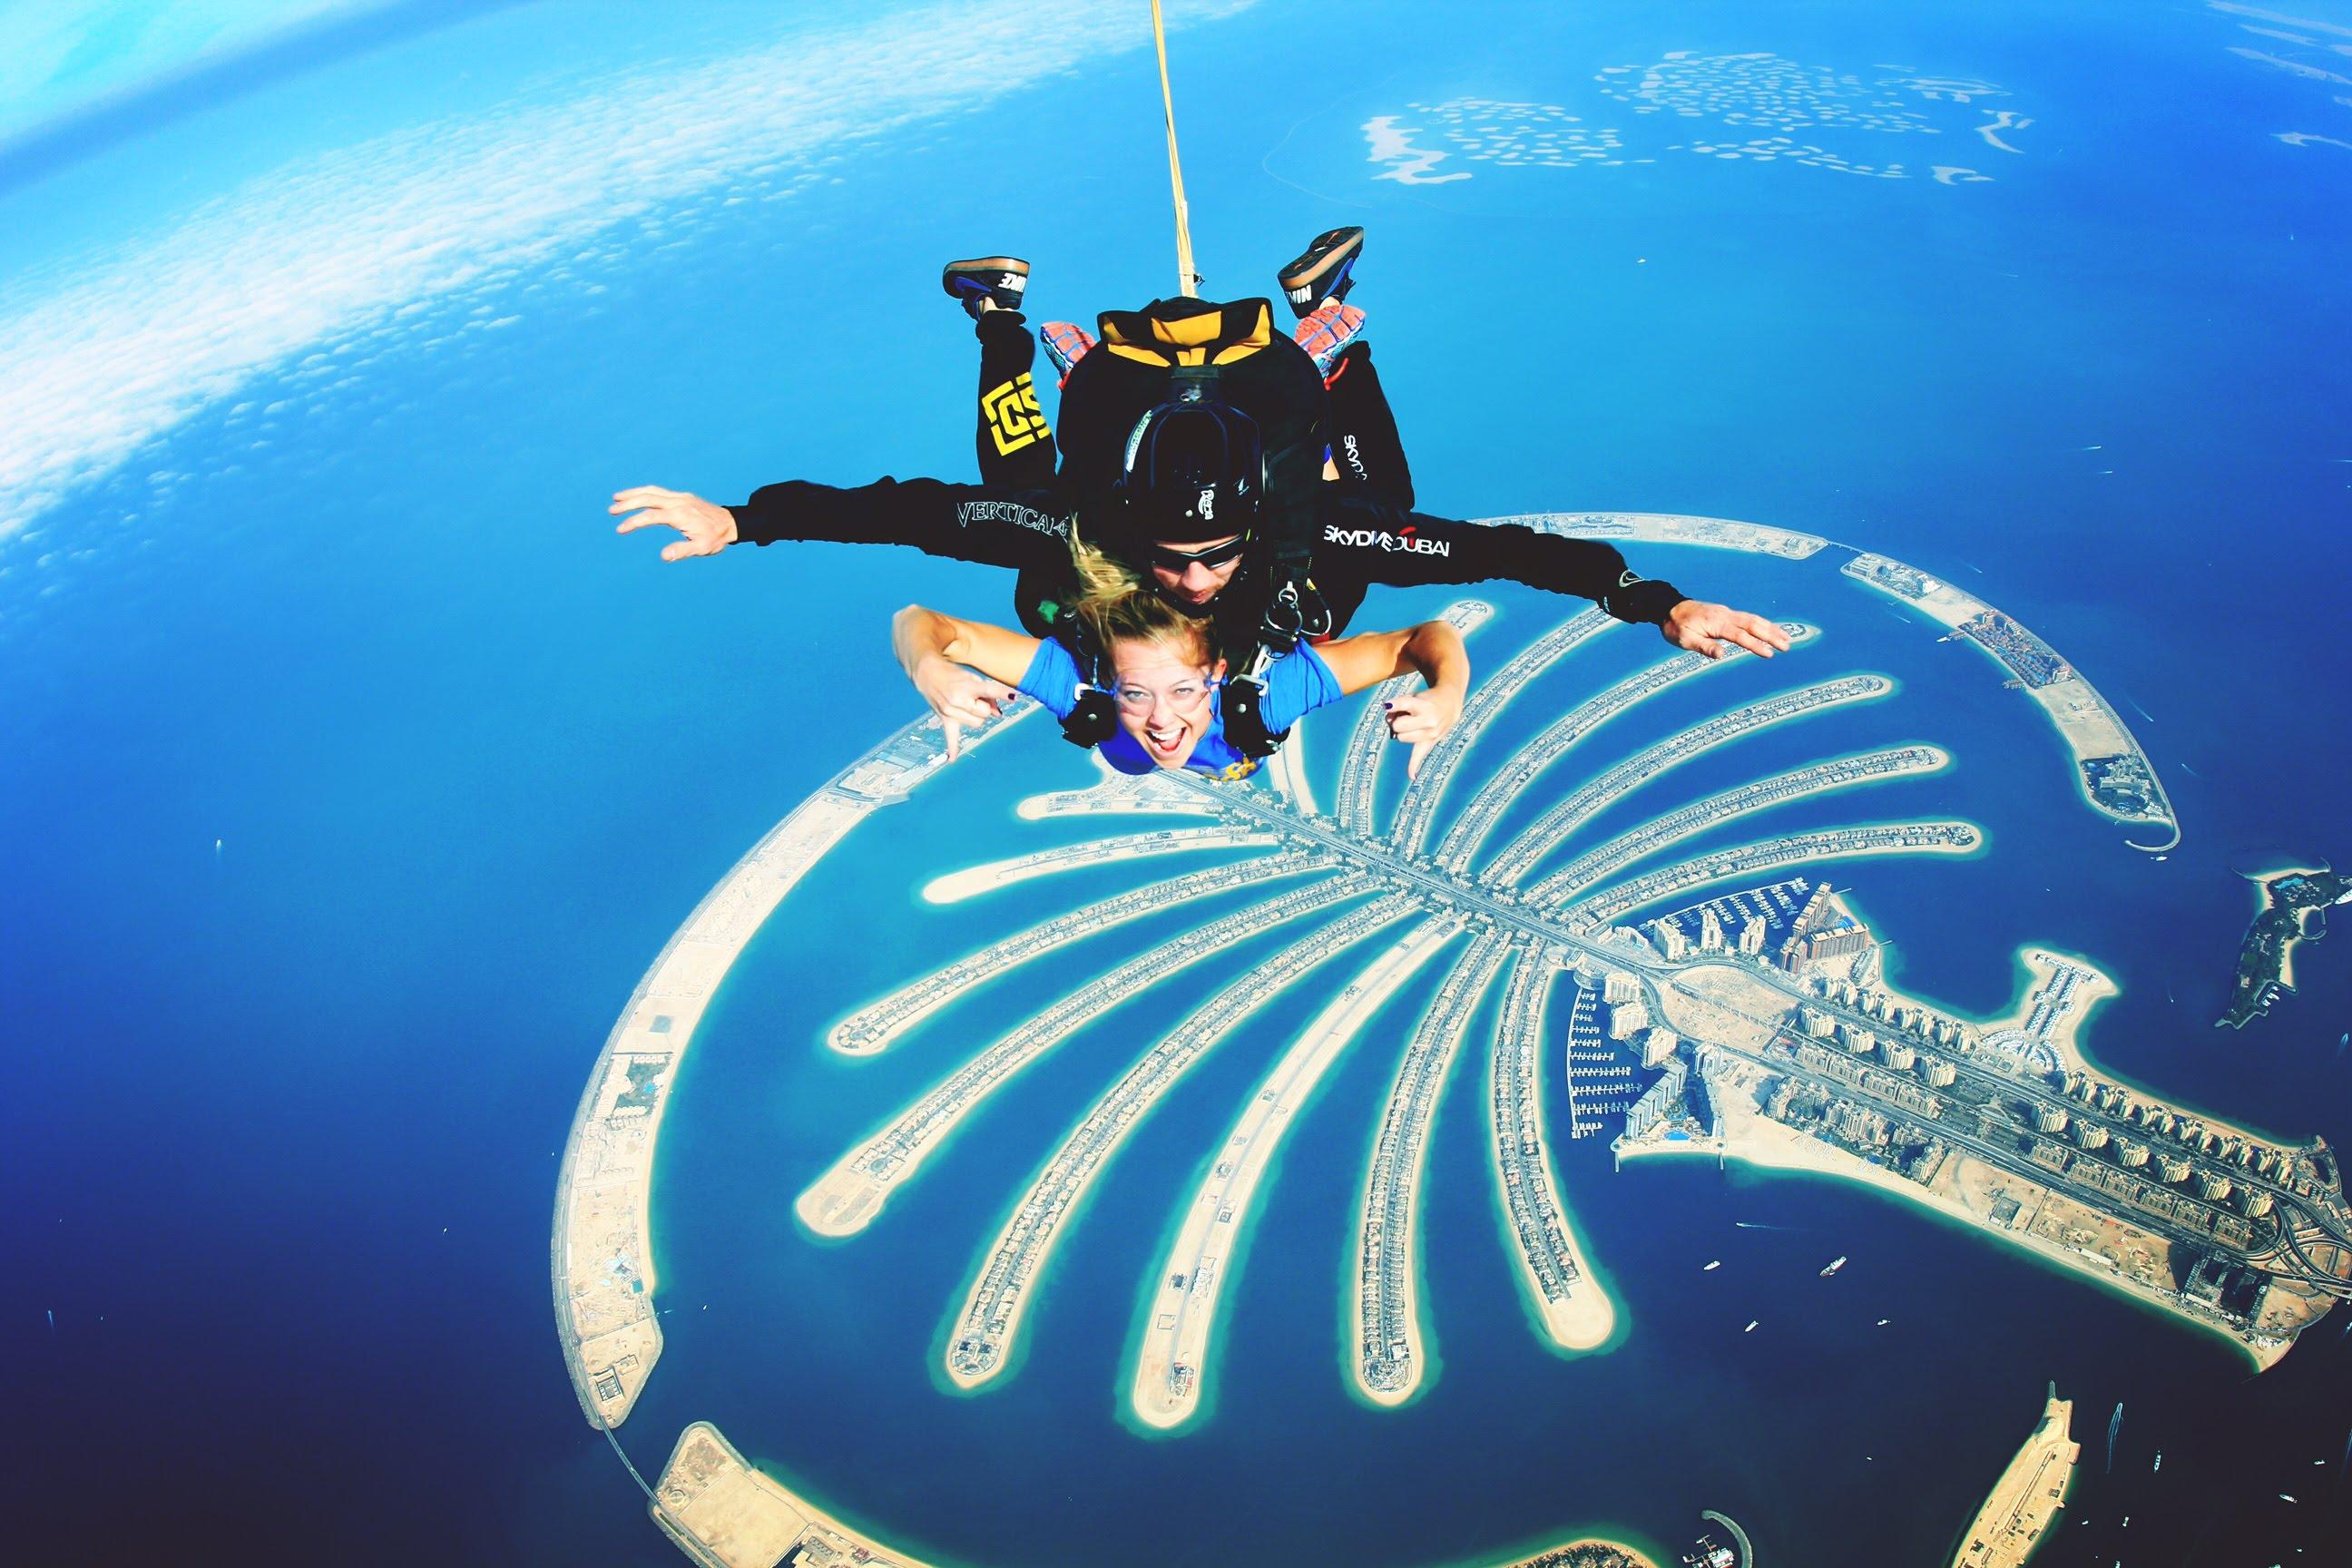 любители острых ощущений и ярких впечатлений смогут развлечь себя незабываемым приключением и прыгнуть с парашютом в Дубае с профессиональными инструкторами Skydive Dubai.